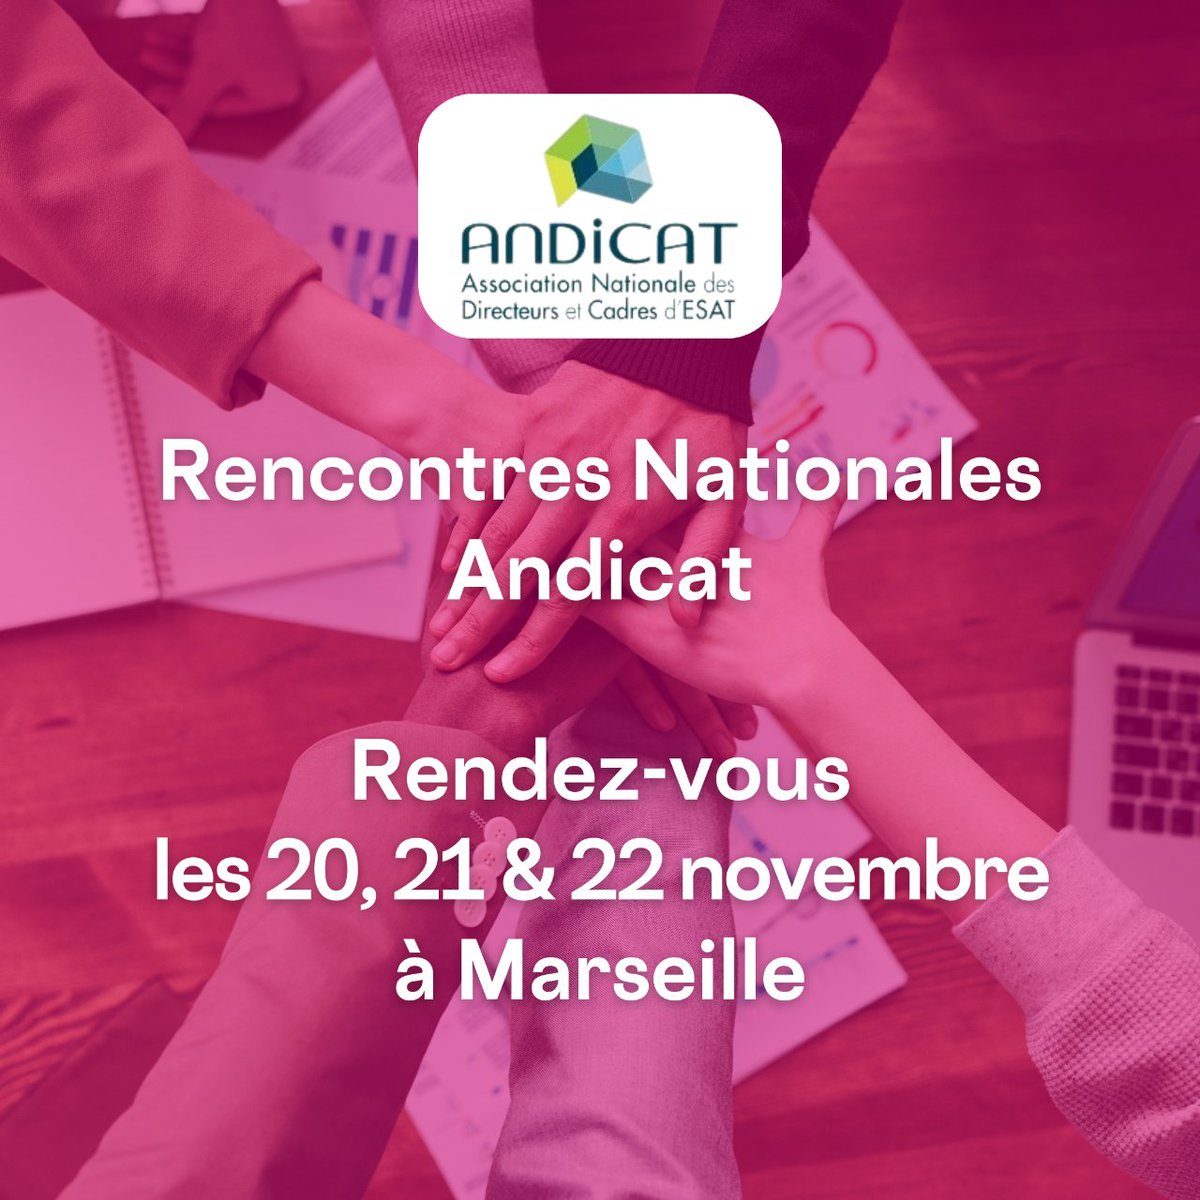 🤝 La mutuelle Intégrance parrain des #Rencontres Nationales Andicat les 20, 21 et 22 novembre à Marseille sur le thème « Les ESAT au rendez vous de la performance durable ».
Plus d’infos sur ▶️ bit.ly/rencontres-nat…
@andicat_asso